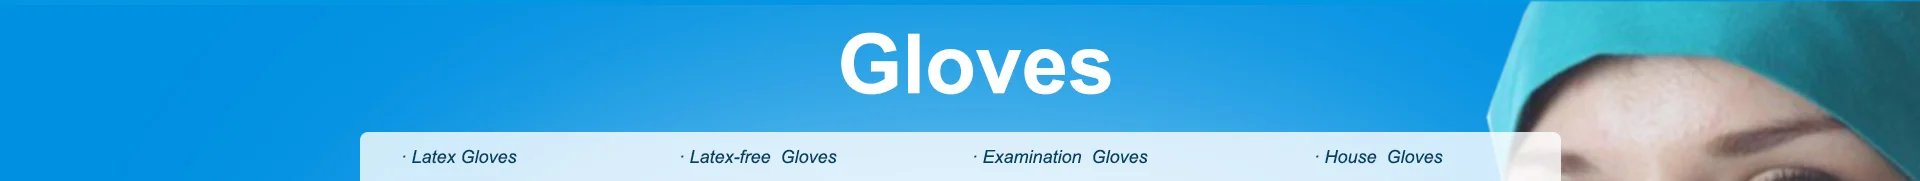 hbm-Medispo surgical gloves/Examination gloves